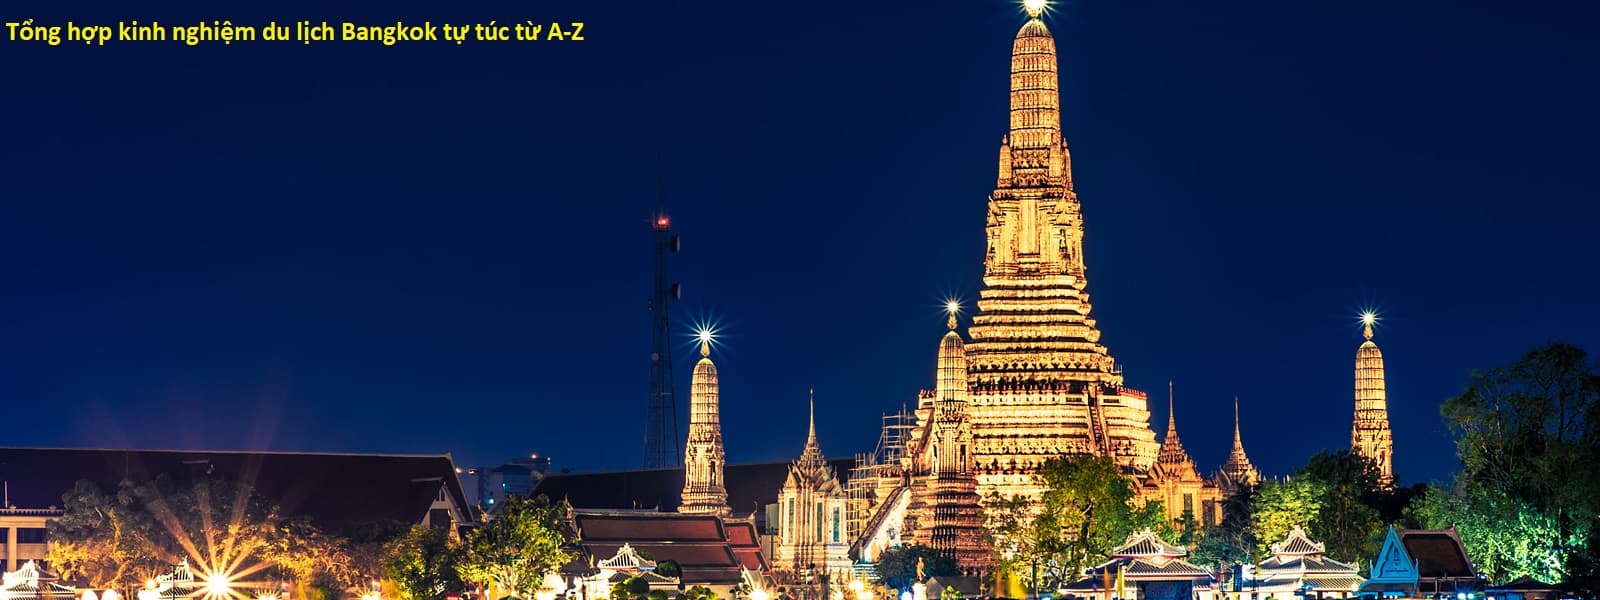 Kinh nghiệm du lịch Bangkok tổng hợp chi tiết nhất: Du lịch Bangkok tự túc có khó không, như thế nào?